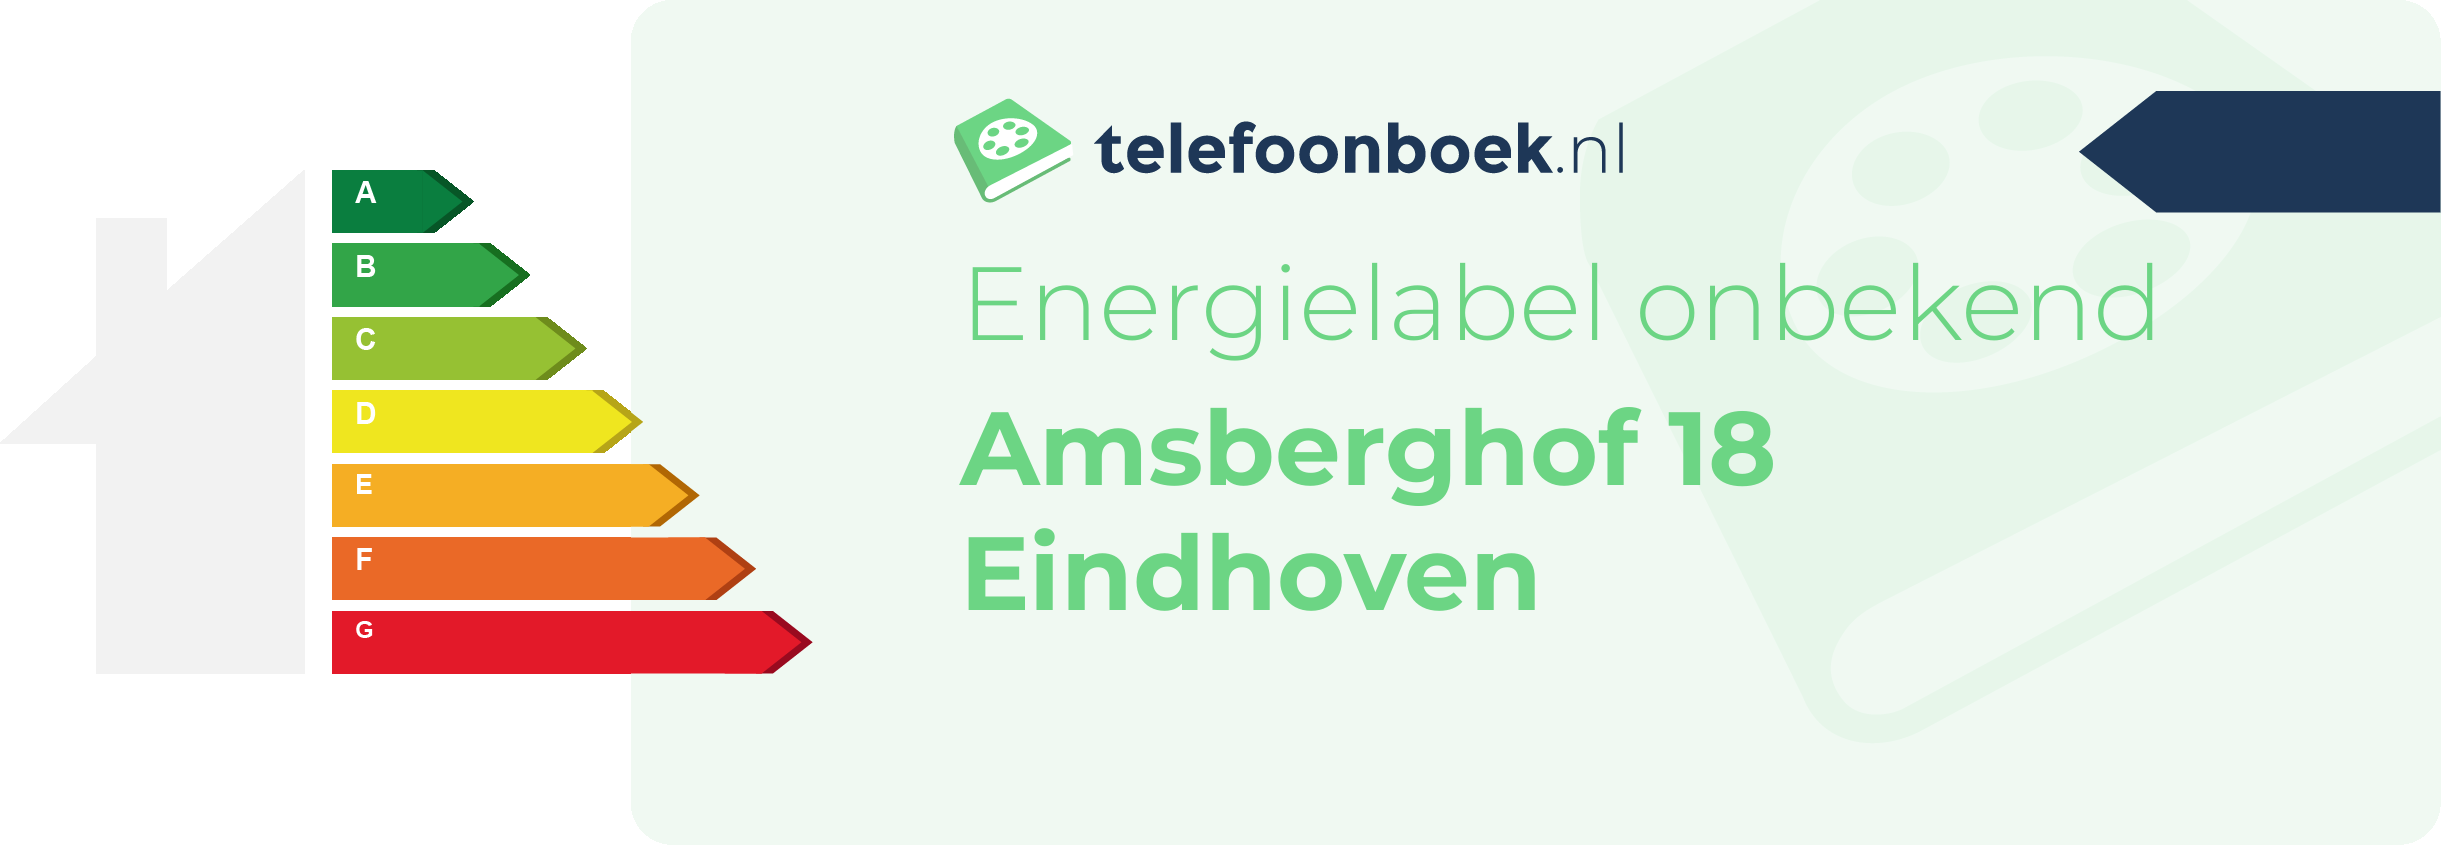 Energielabel Amsberghof 18 Eindhoven